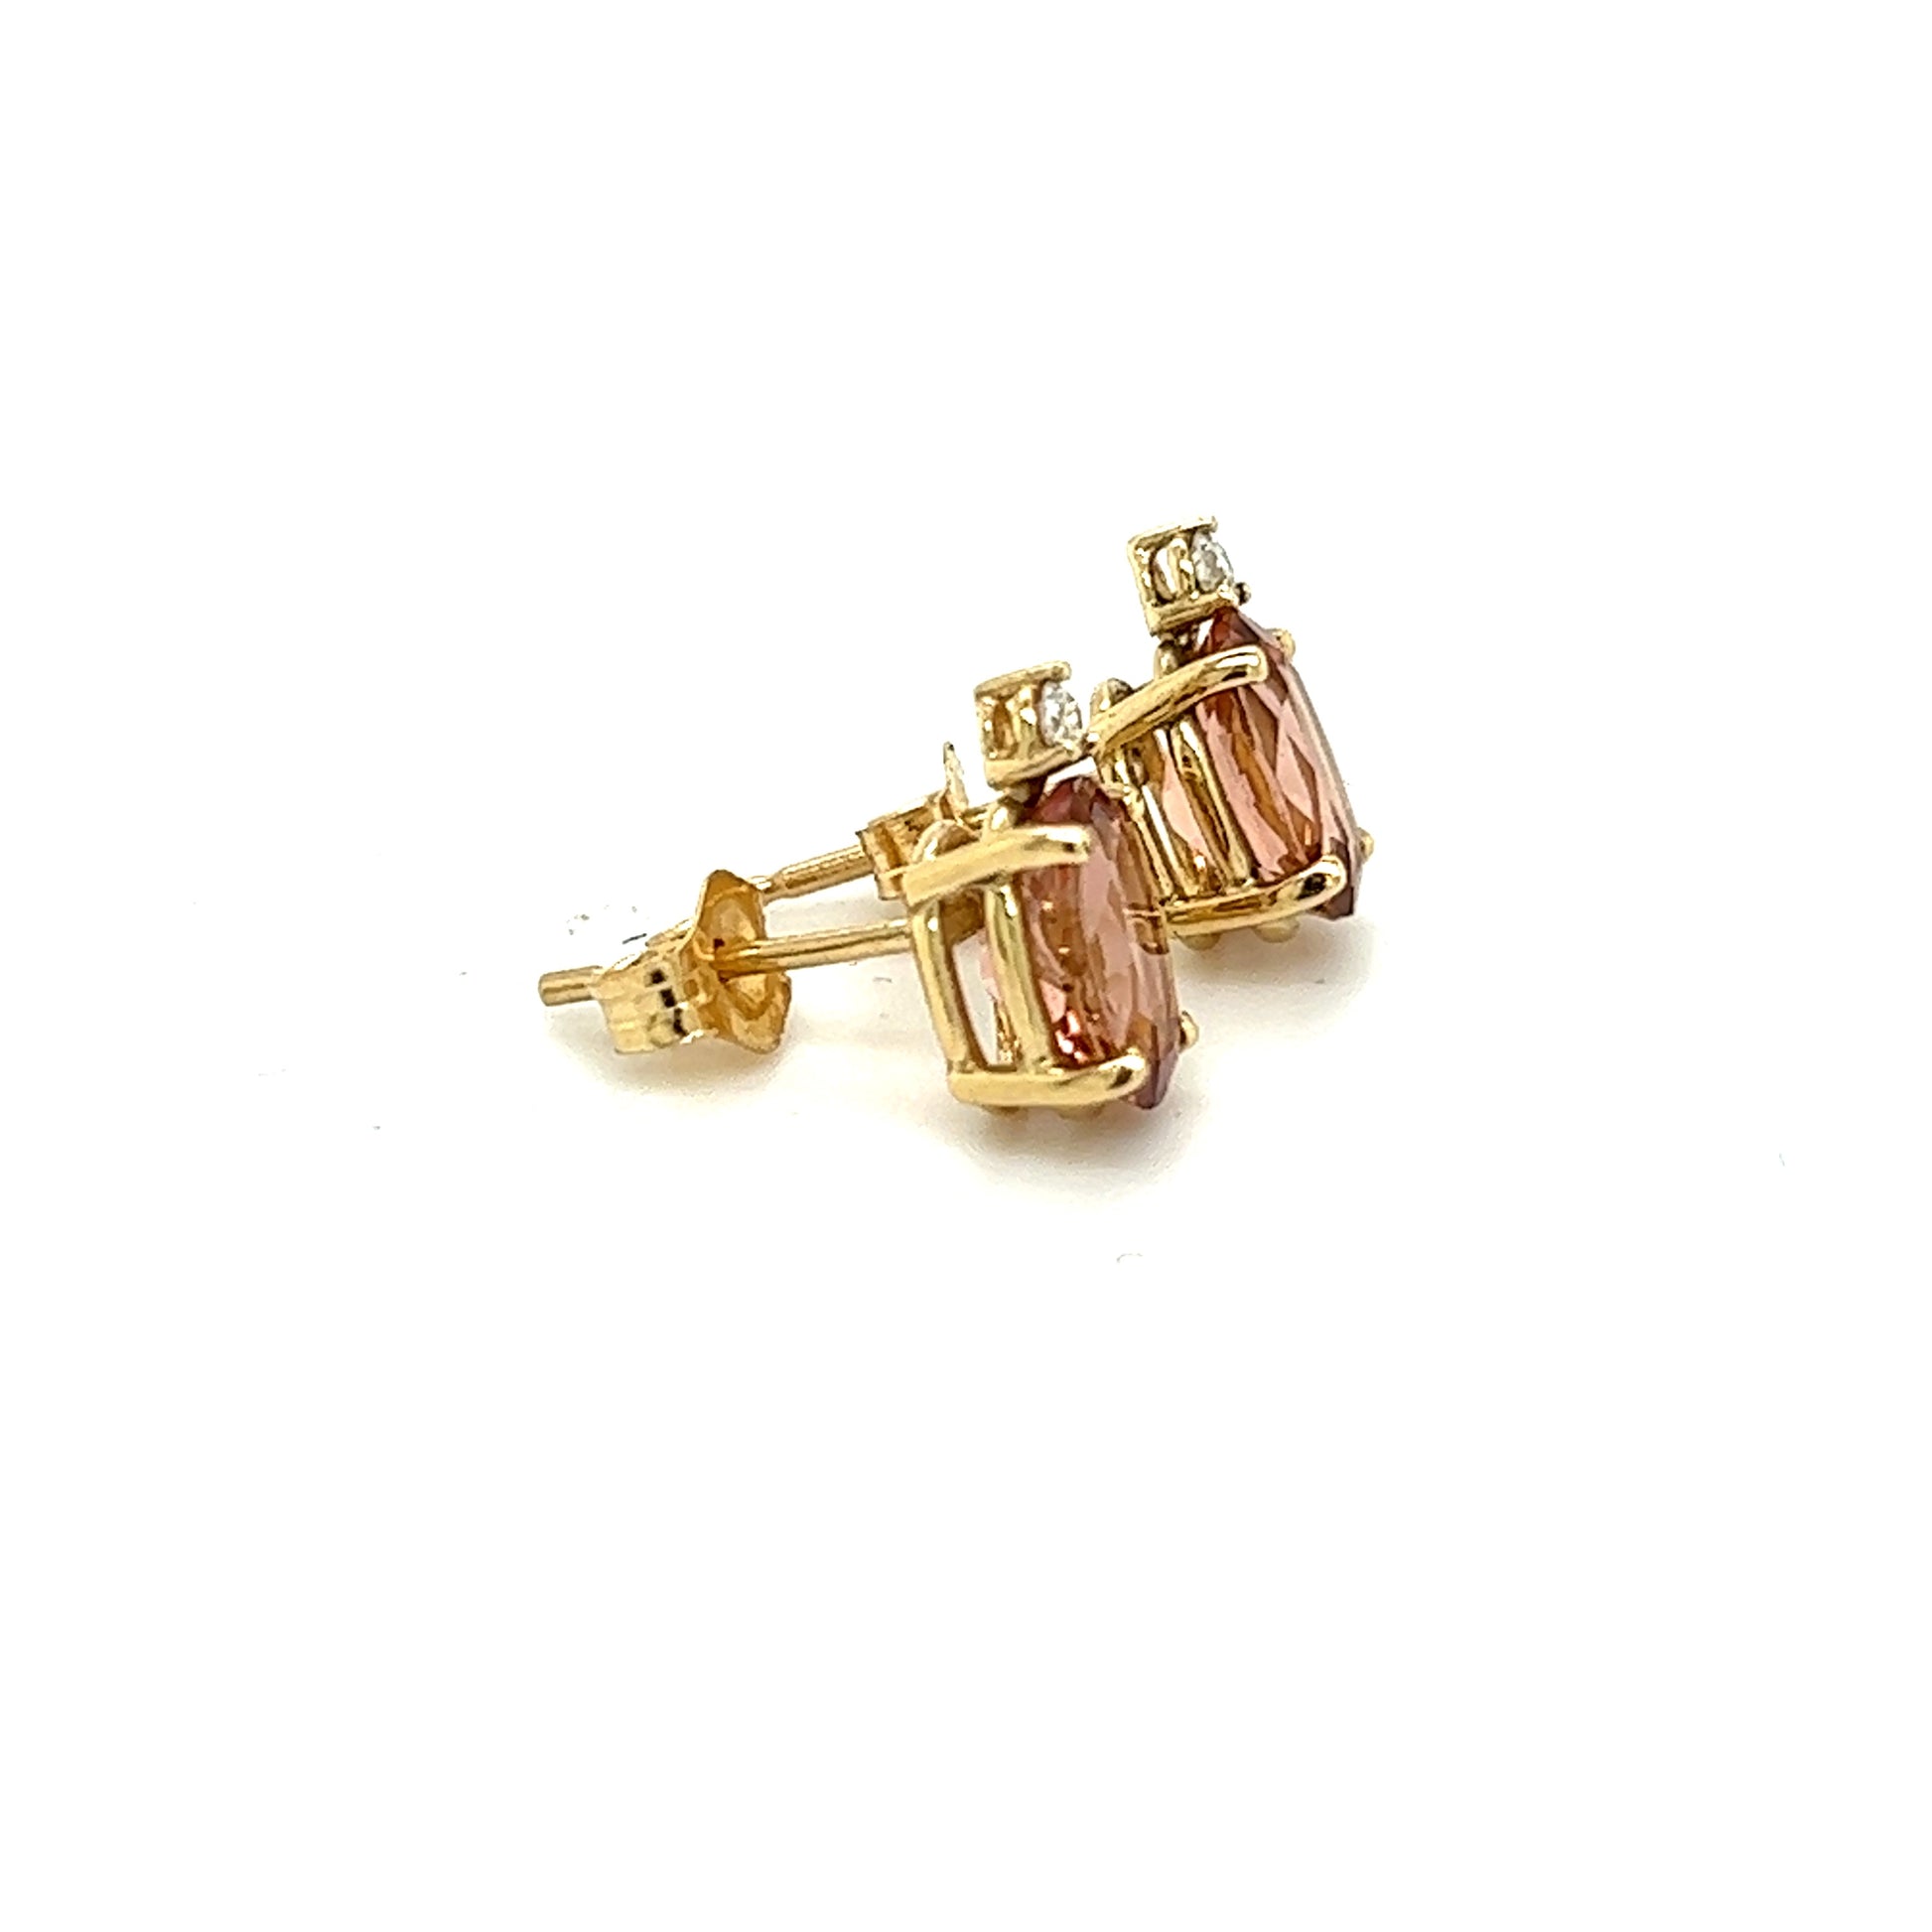 Natural Tourmaline Diamond Stud Earrings 14k Y Gold 1.76 TCW Certified $1,690 121431 - Certified Fine Jewelry